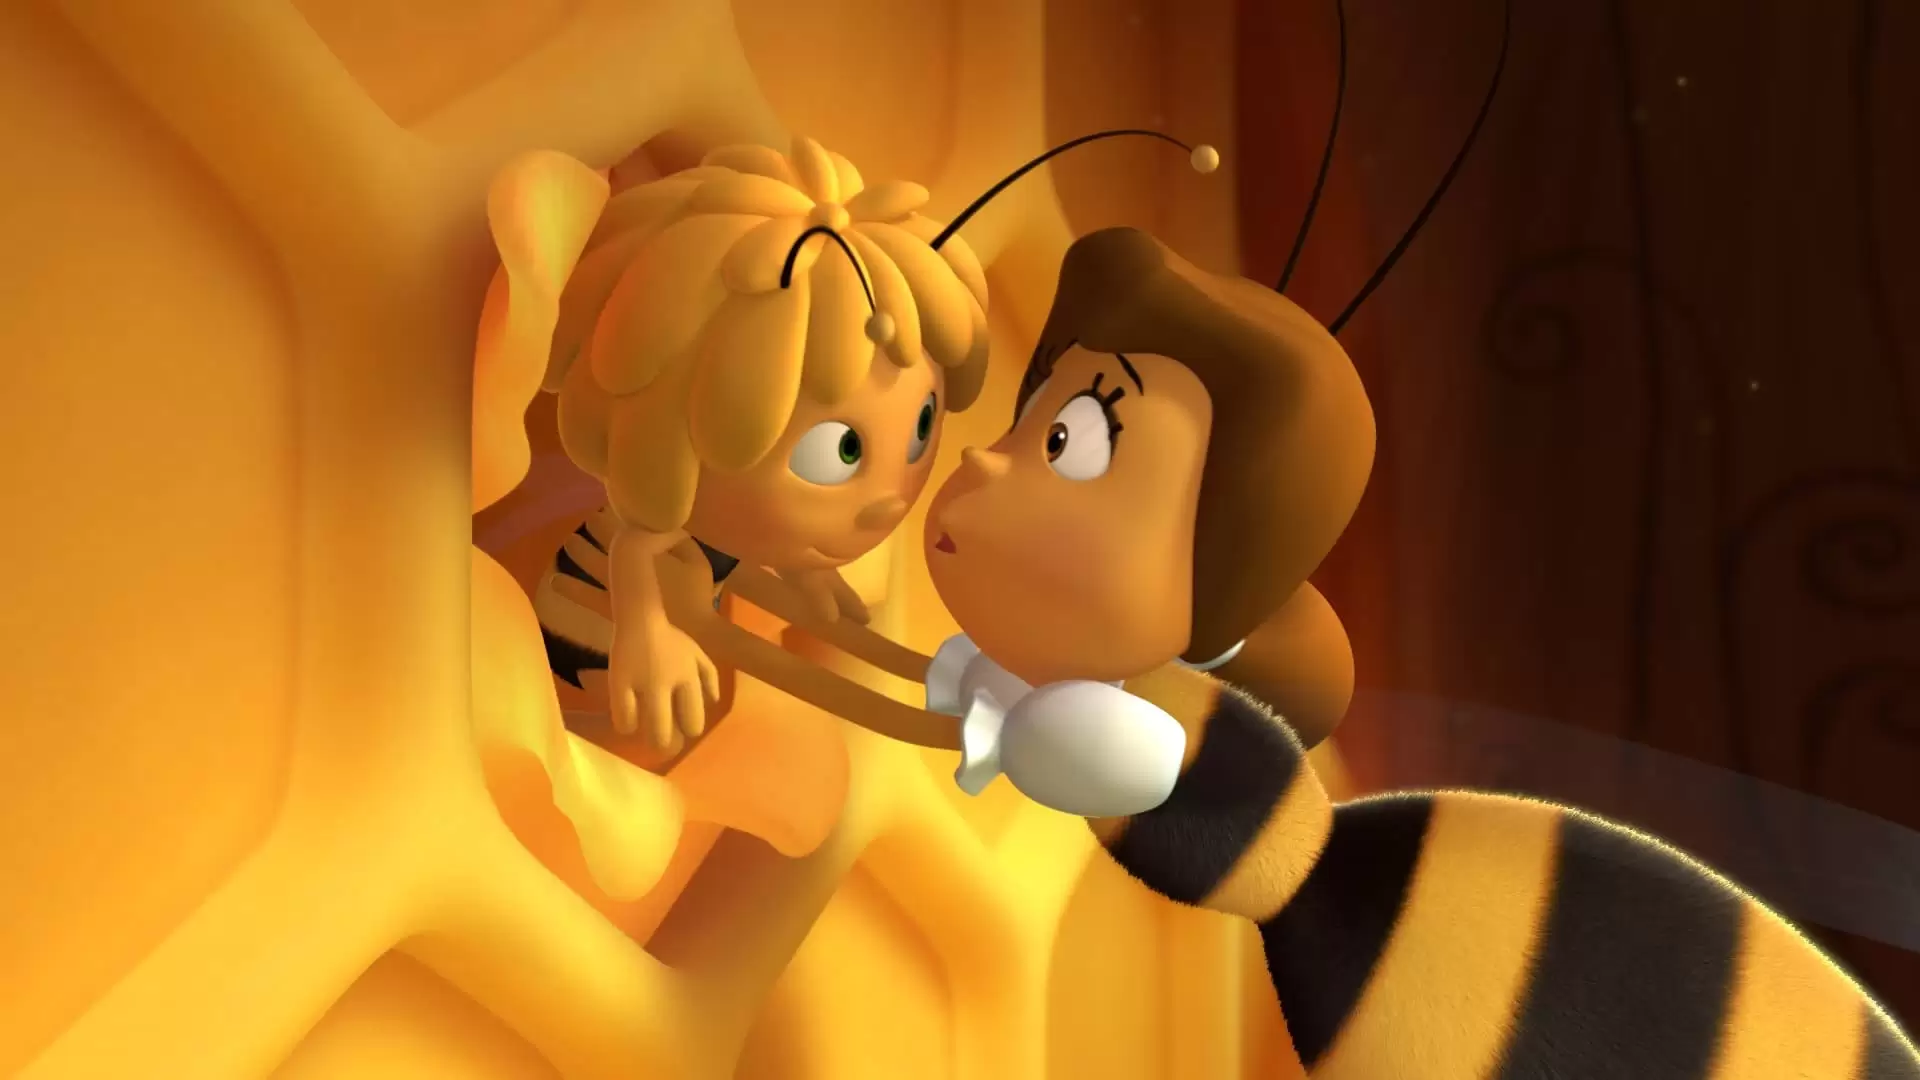 دانلود انیمیشن Maya the Bee Movie 2014 با زیرنویس فارسی